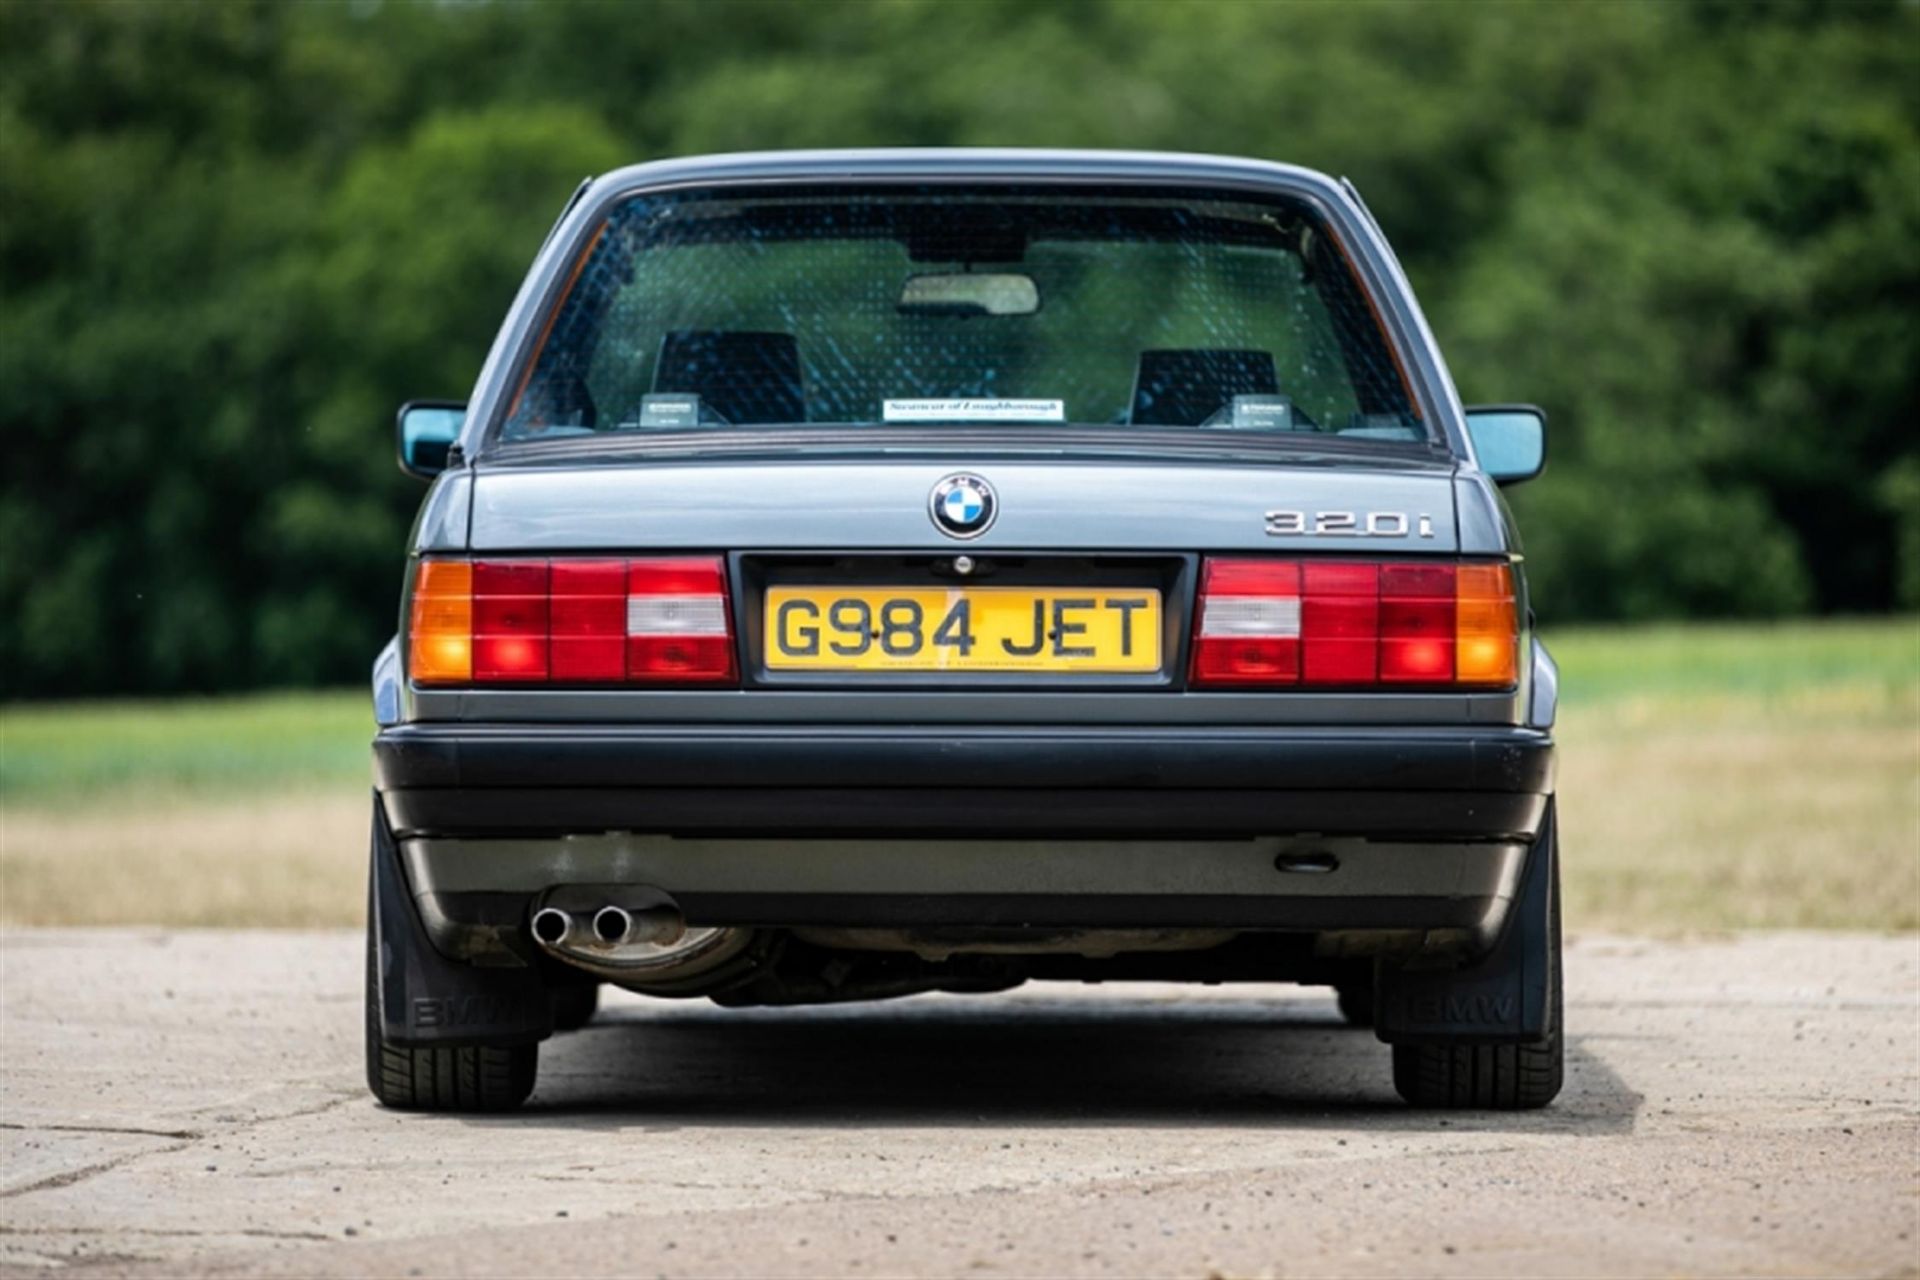 1989 BMW 320i SE (E30) - Image 5 of 5